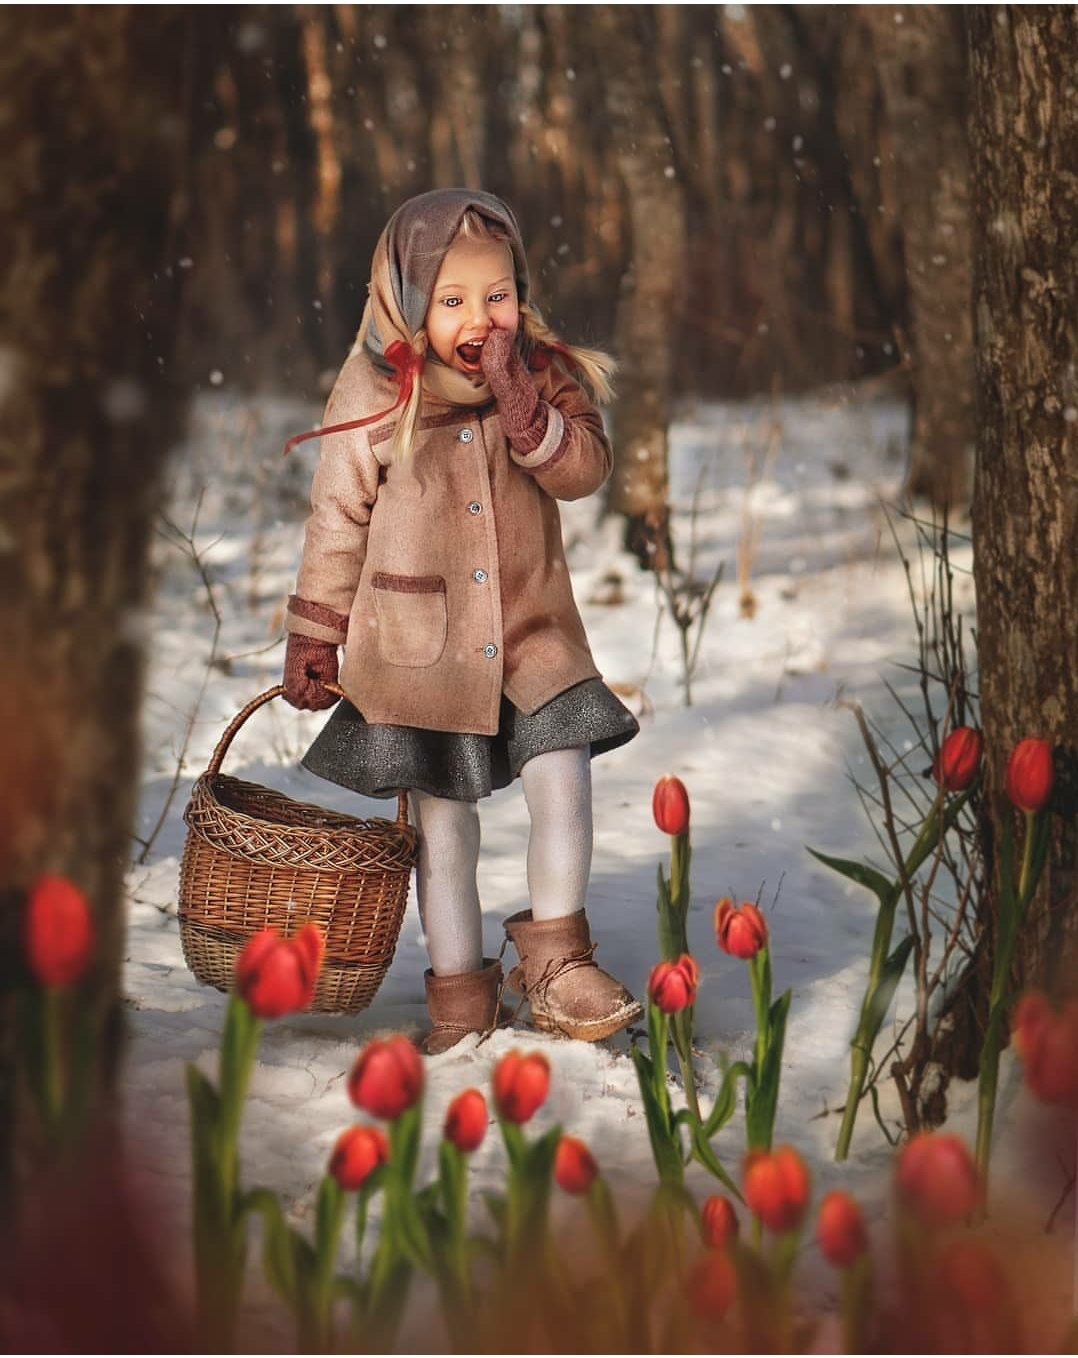 12 месяцев Дети художественнаяфотография детскаяфотосессия волшебство тюльпаны удивление лес